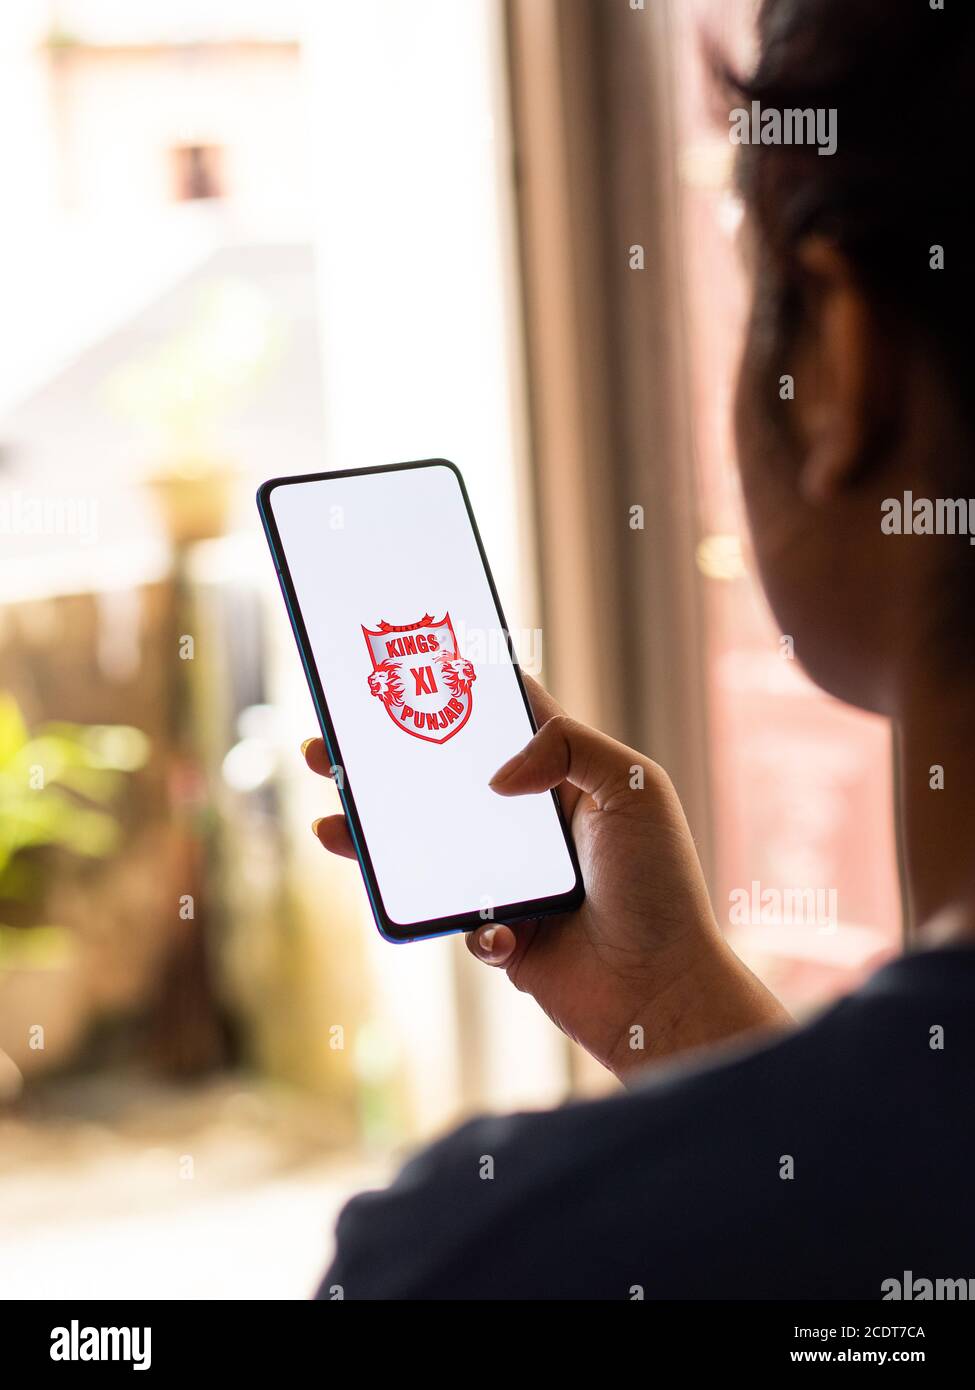 Assam, inde - 27 août 2020 : logo Kings XI punjab sur l'écran du téléphone. Banque D'Images